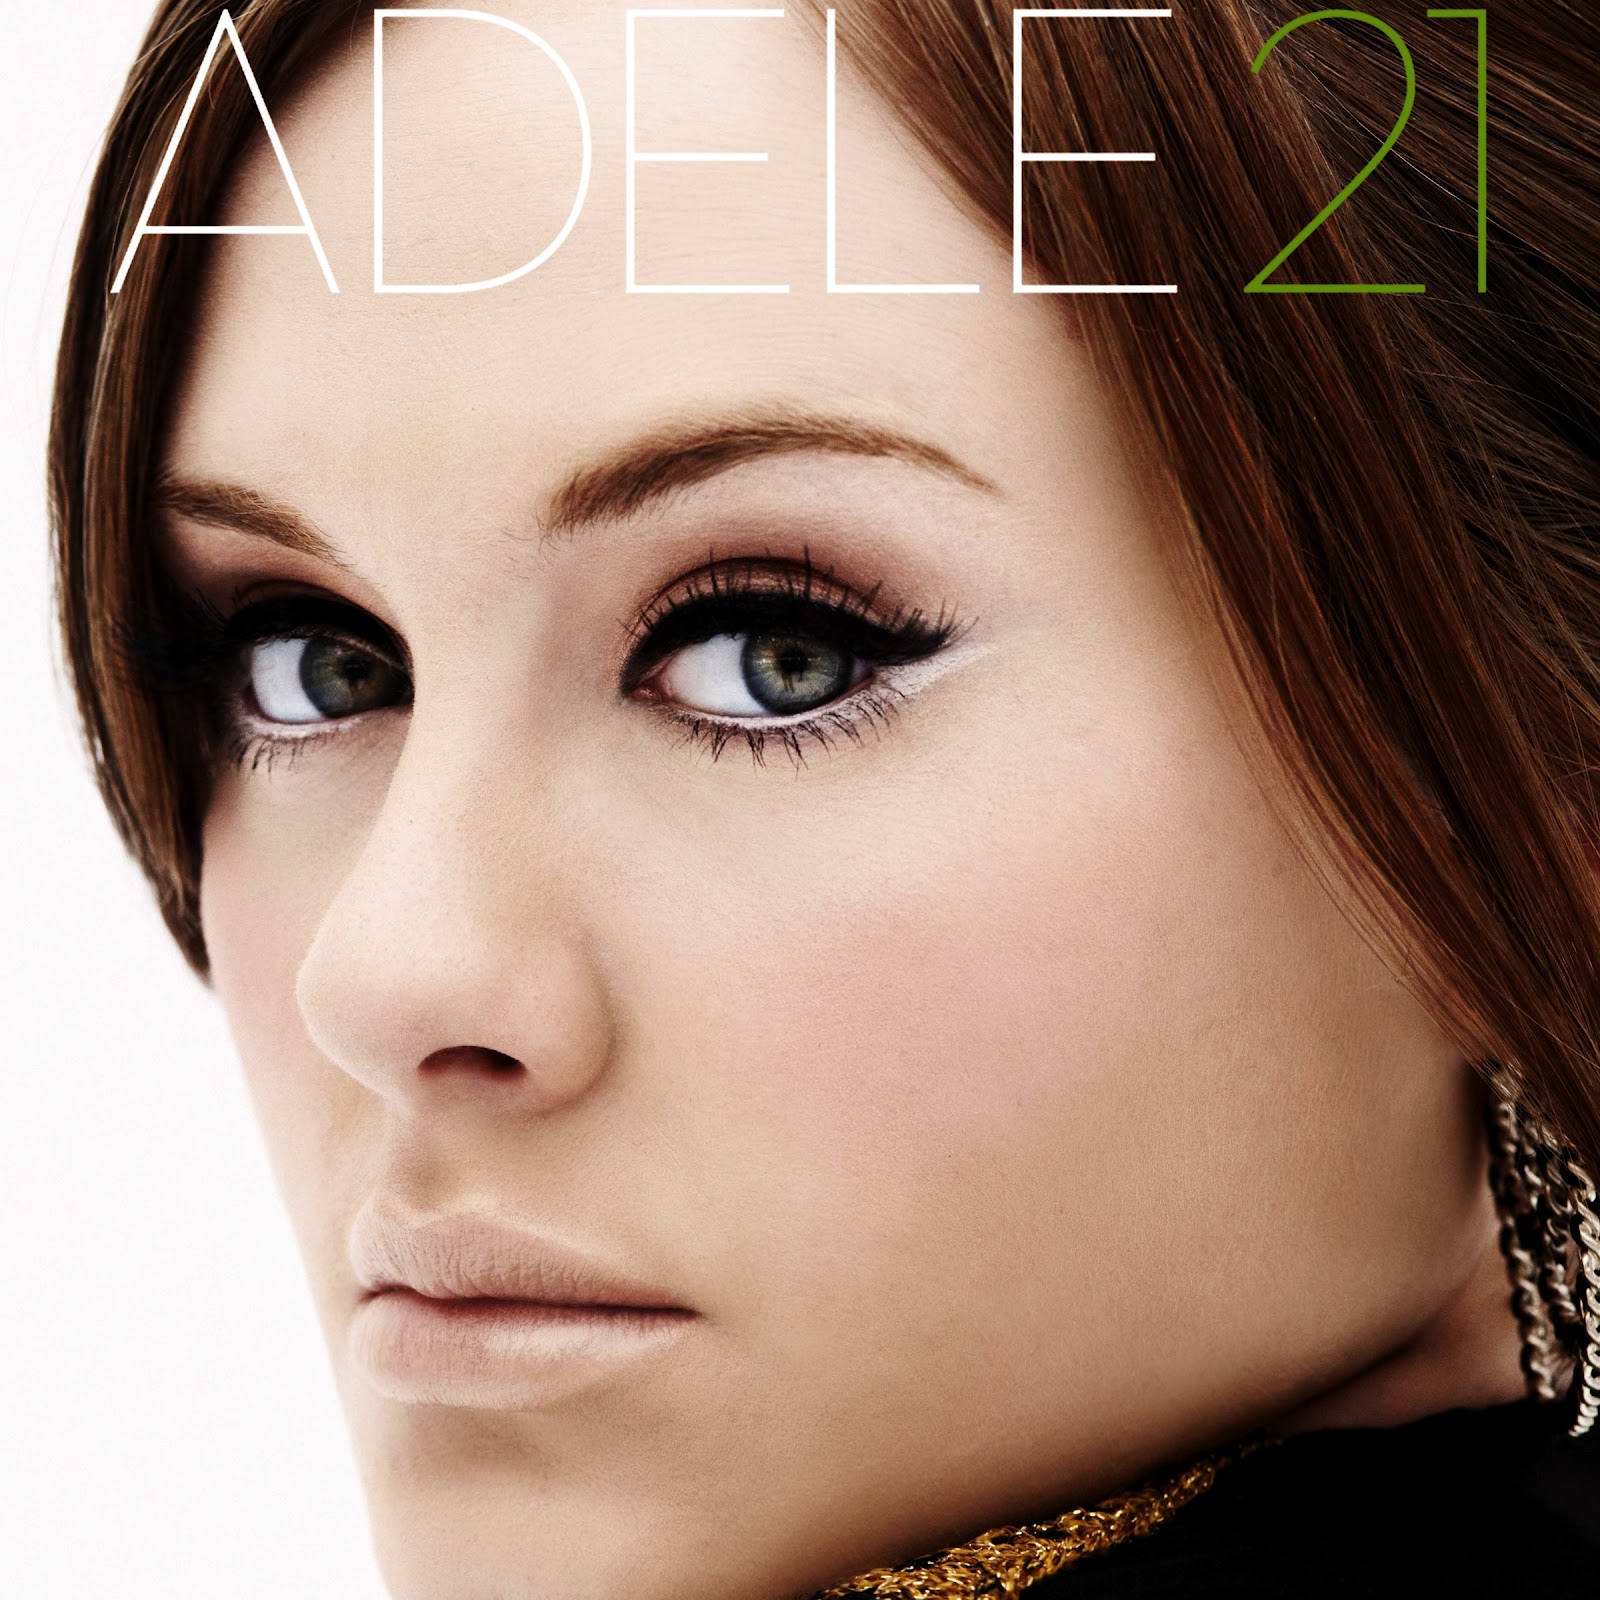 Adele 23 Album D33blog